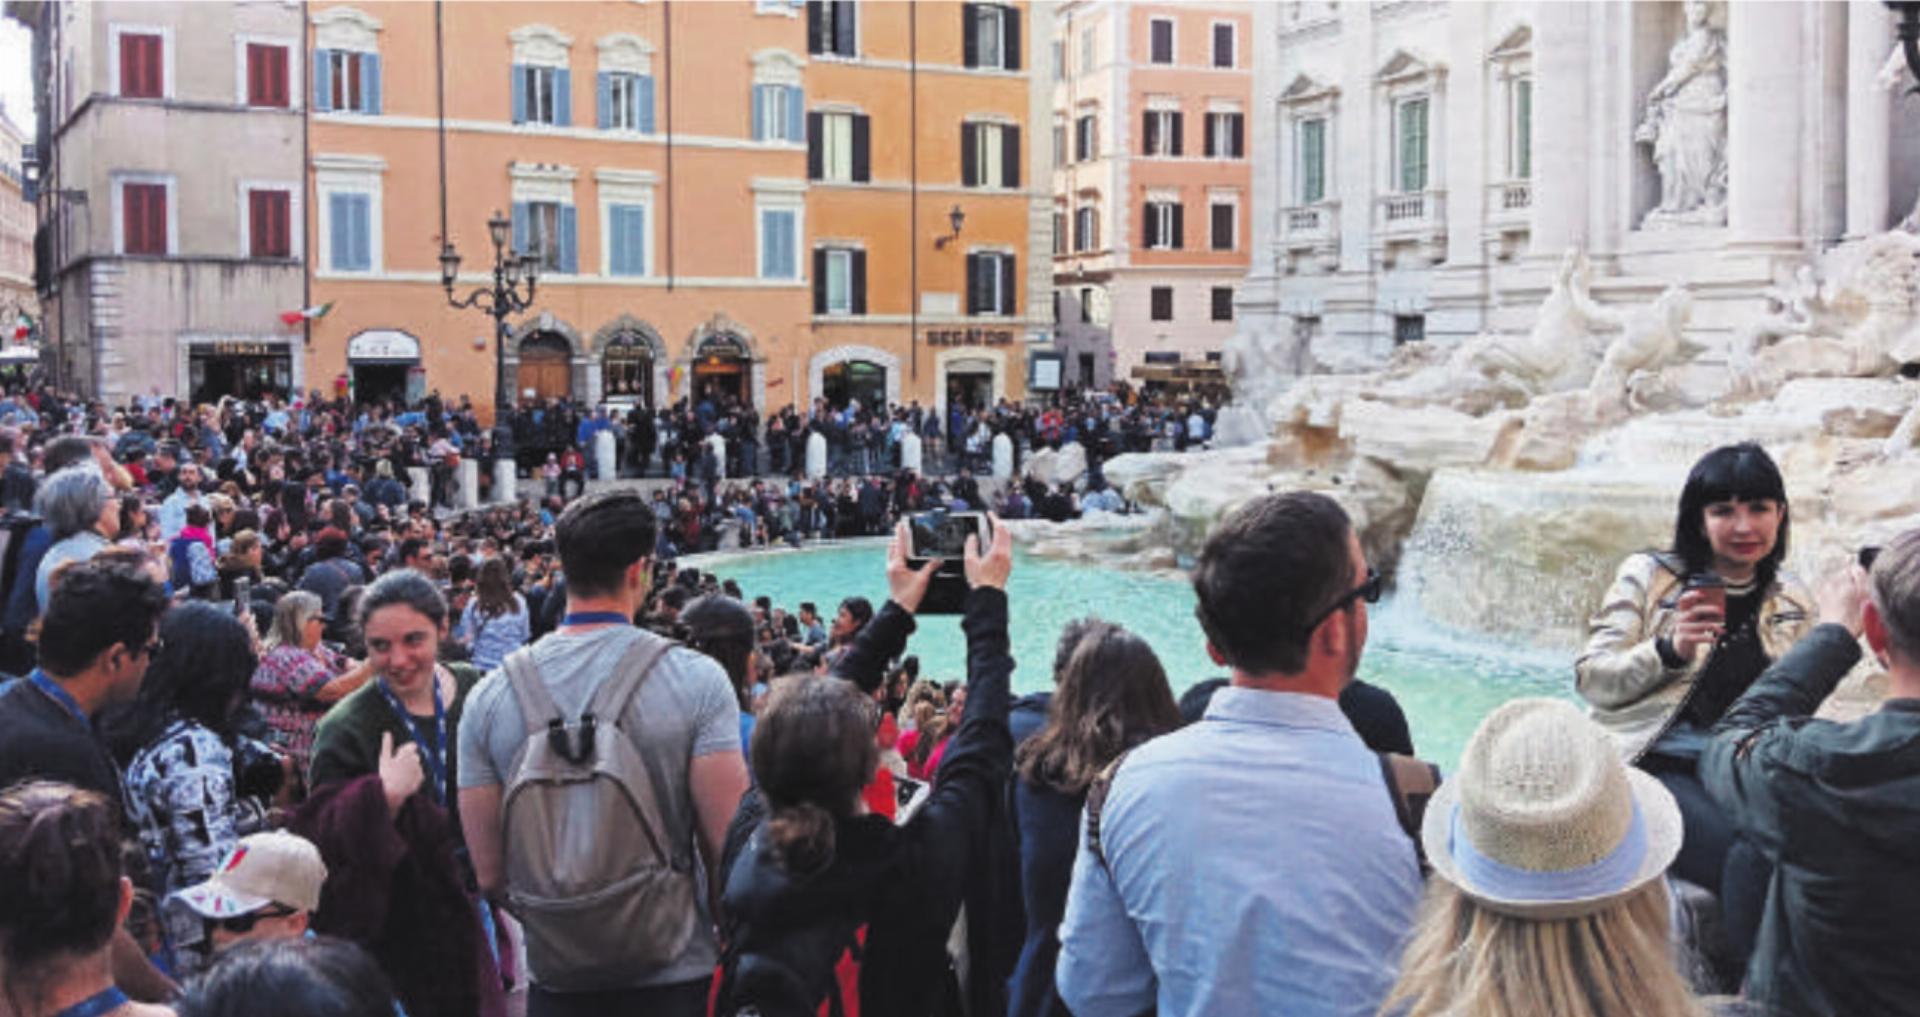 Ein Touristen-Hotspot: der Trevibrunnen in Rom. Bild: spr